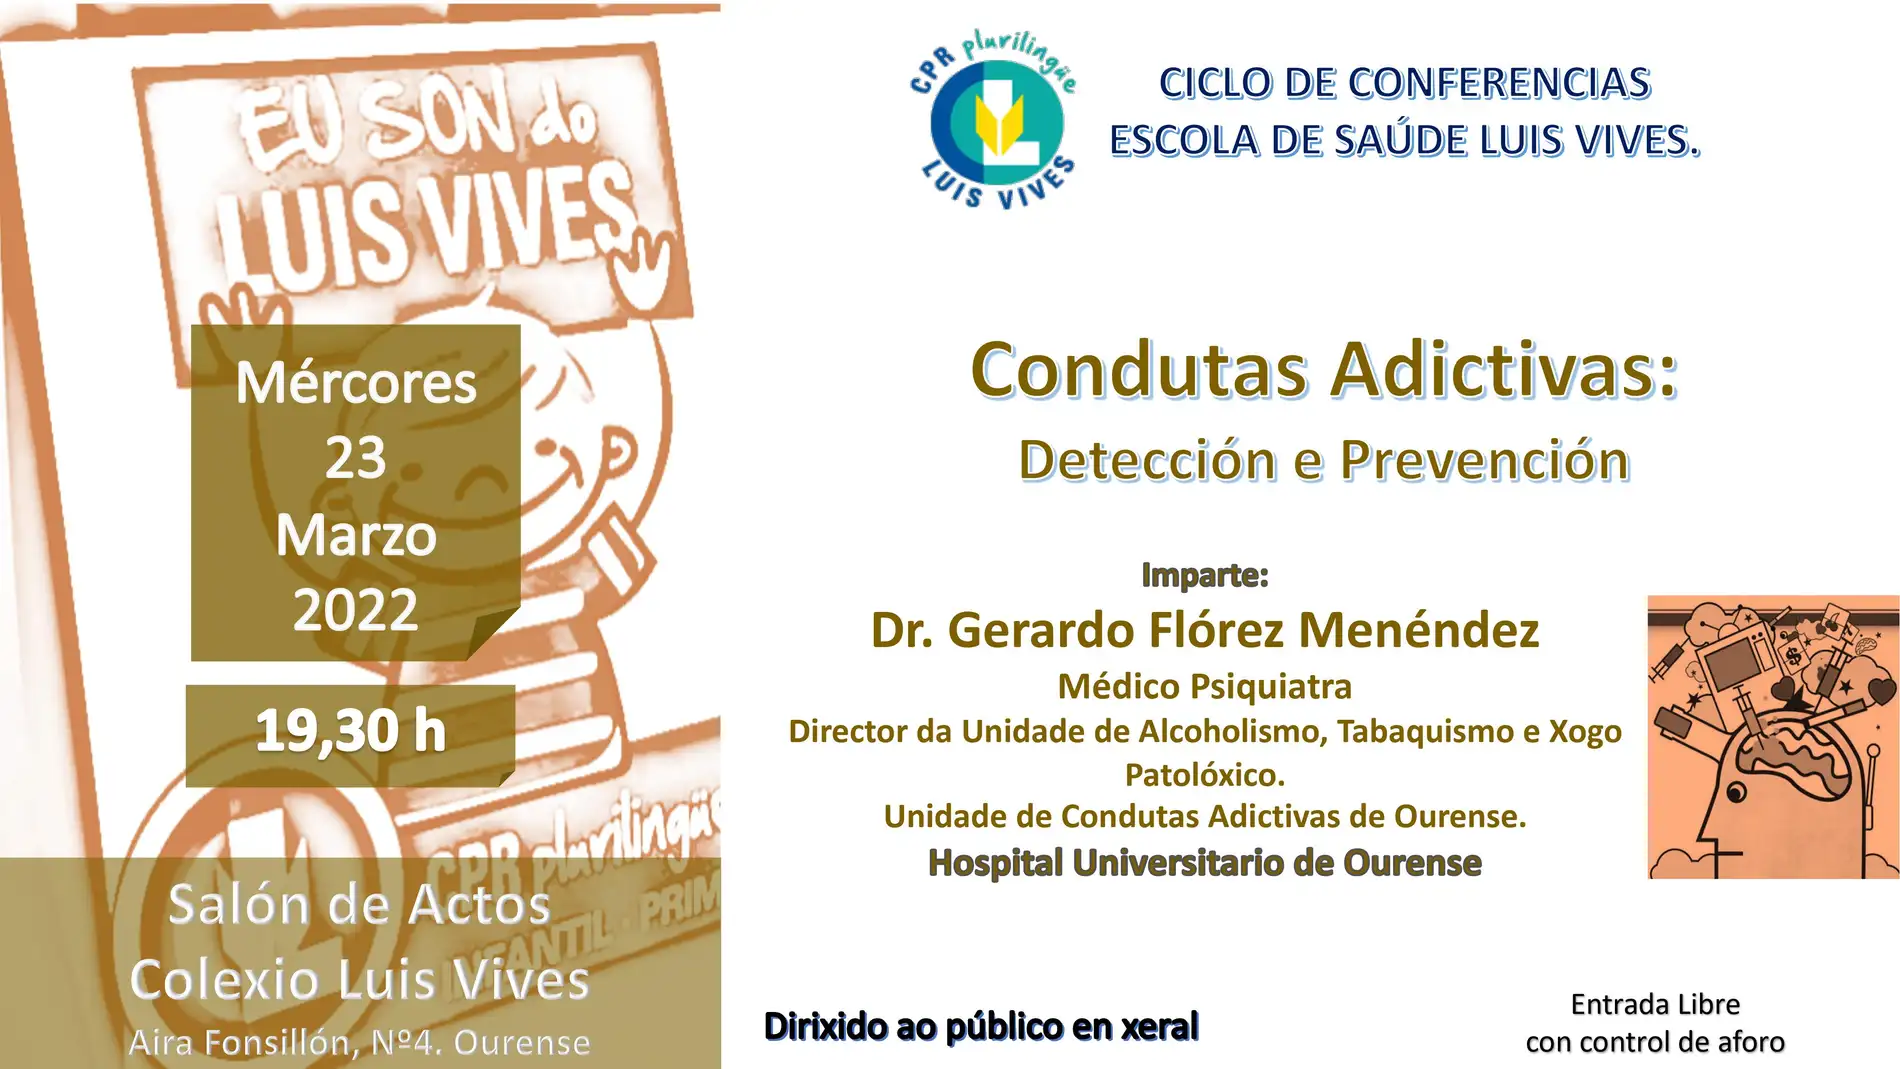 Conductas adictivas (detección e prevención)